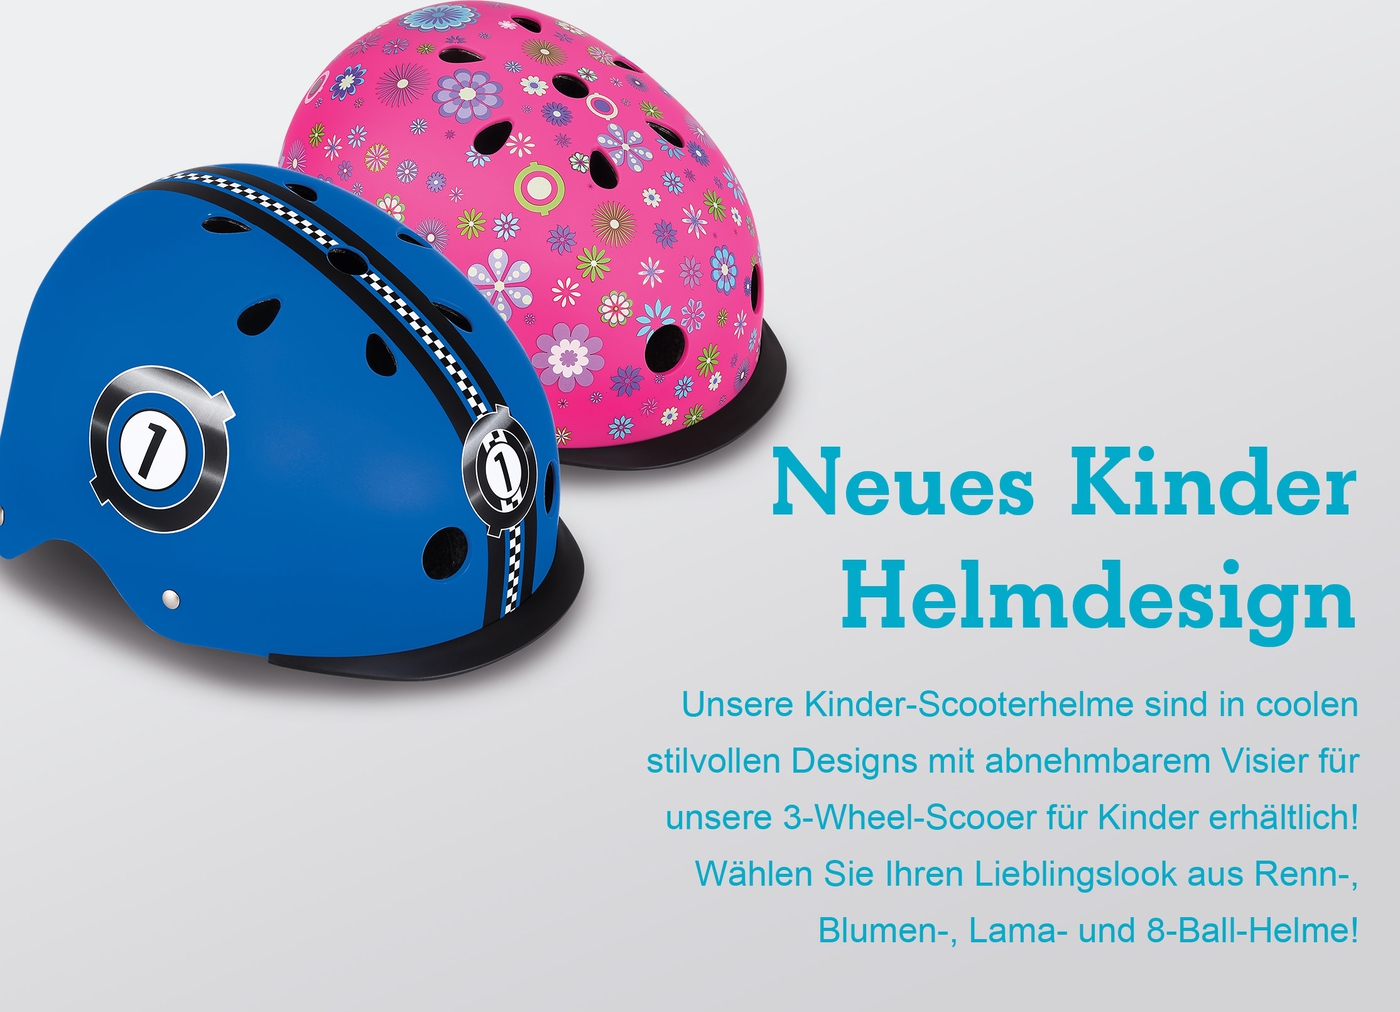 Neues Kinder Helmdesign